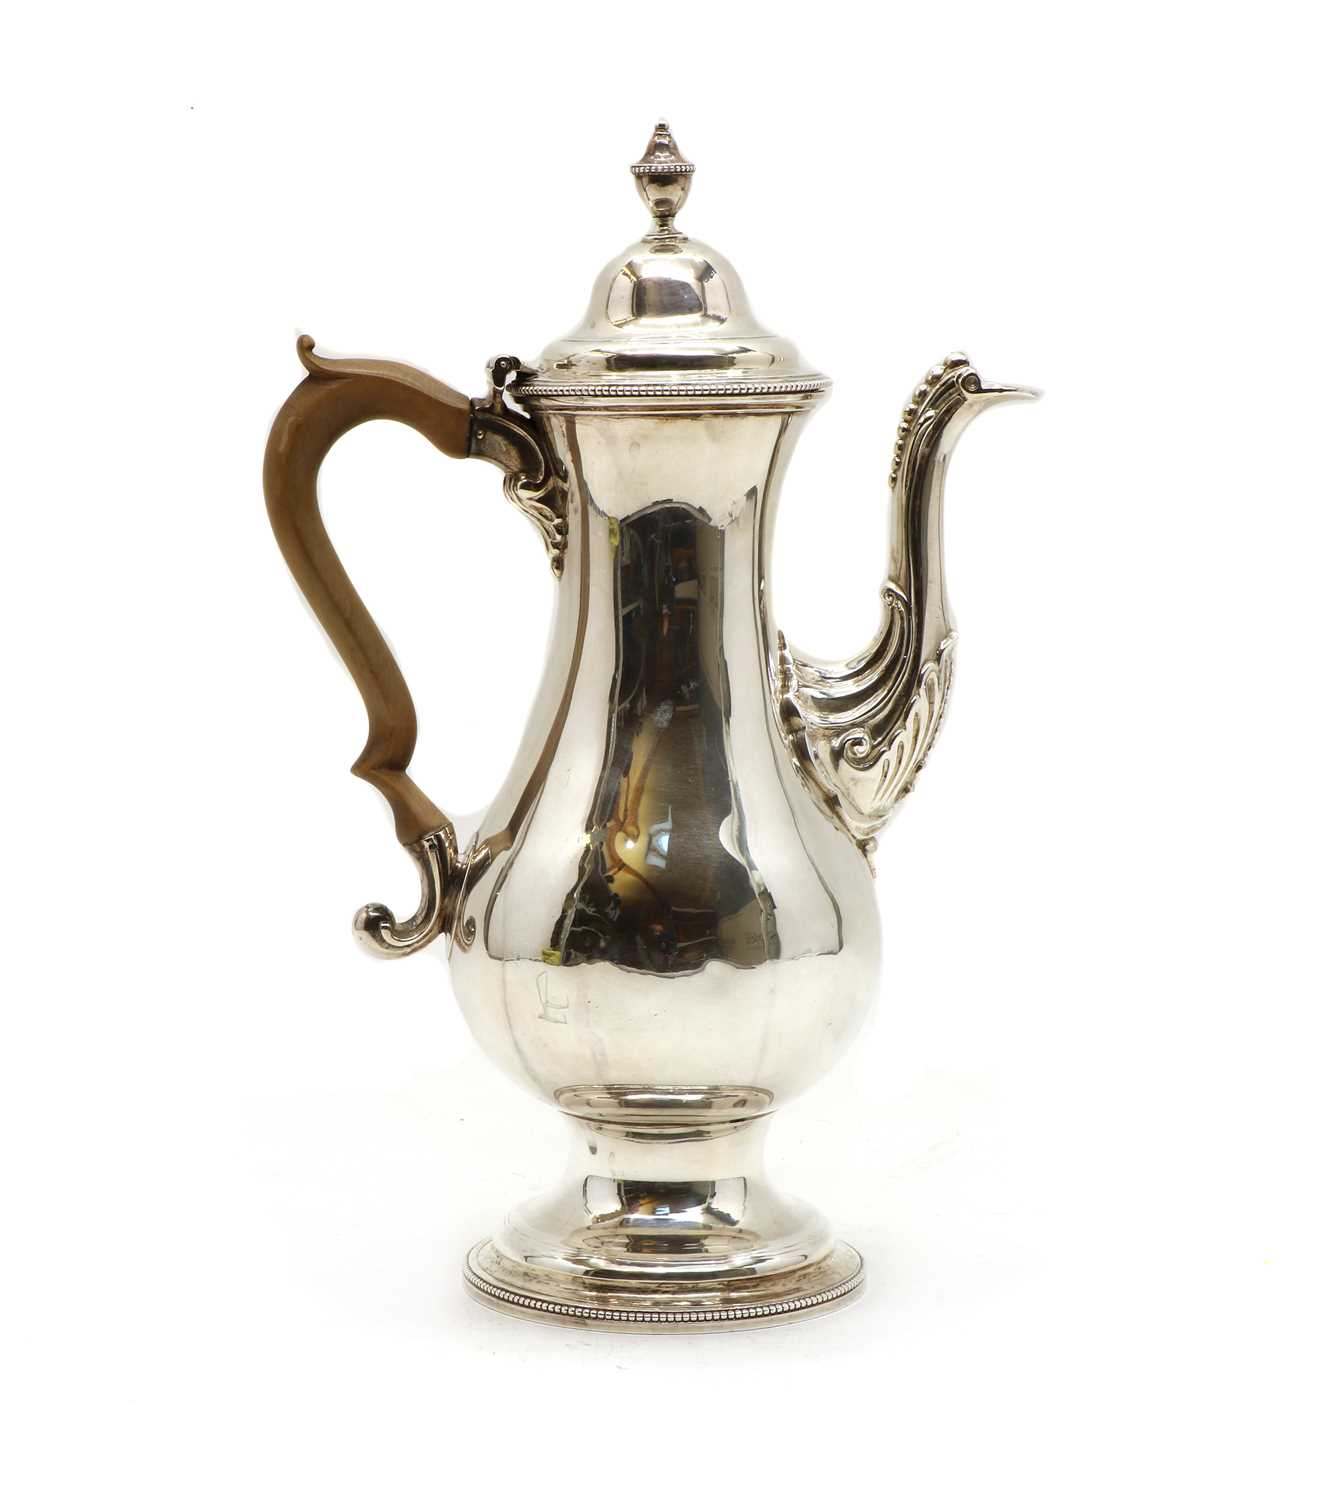 Lot 3 - A Regency silver coffee pot